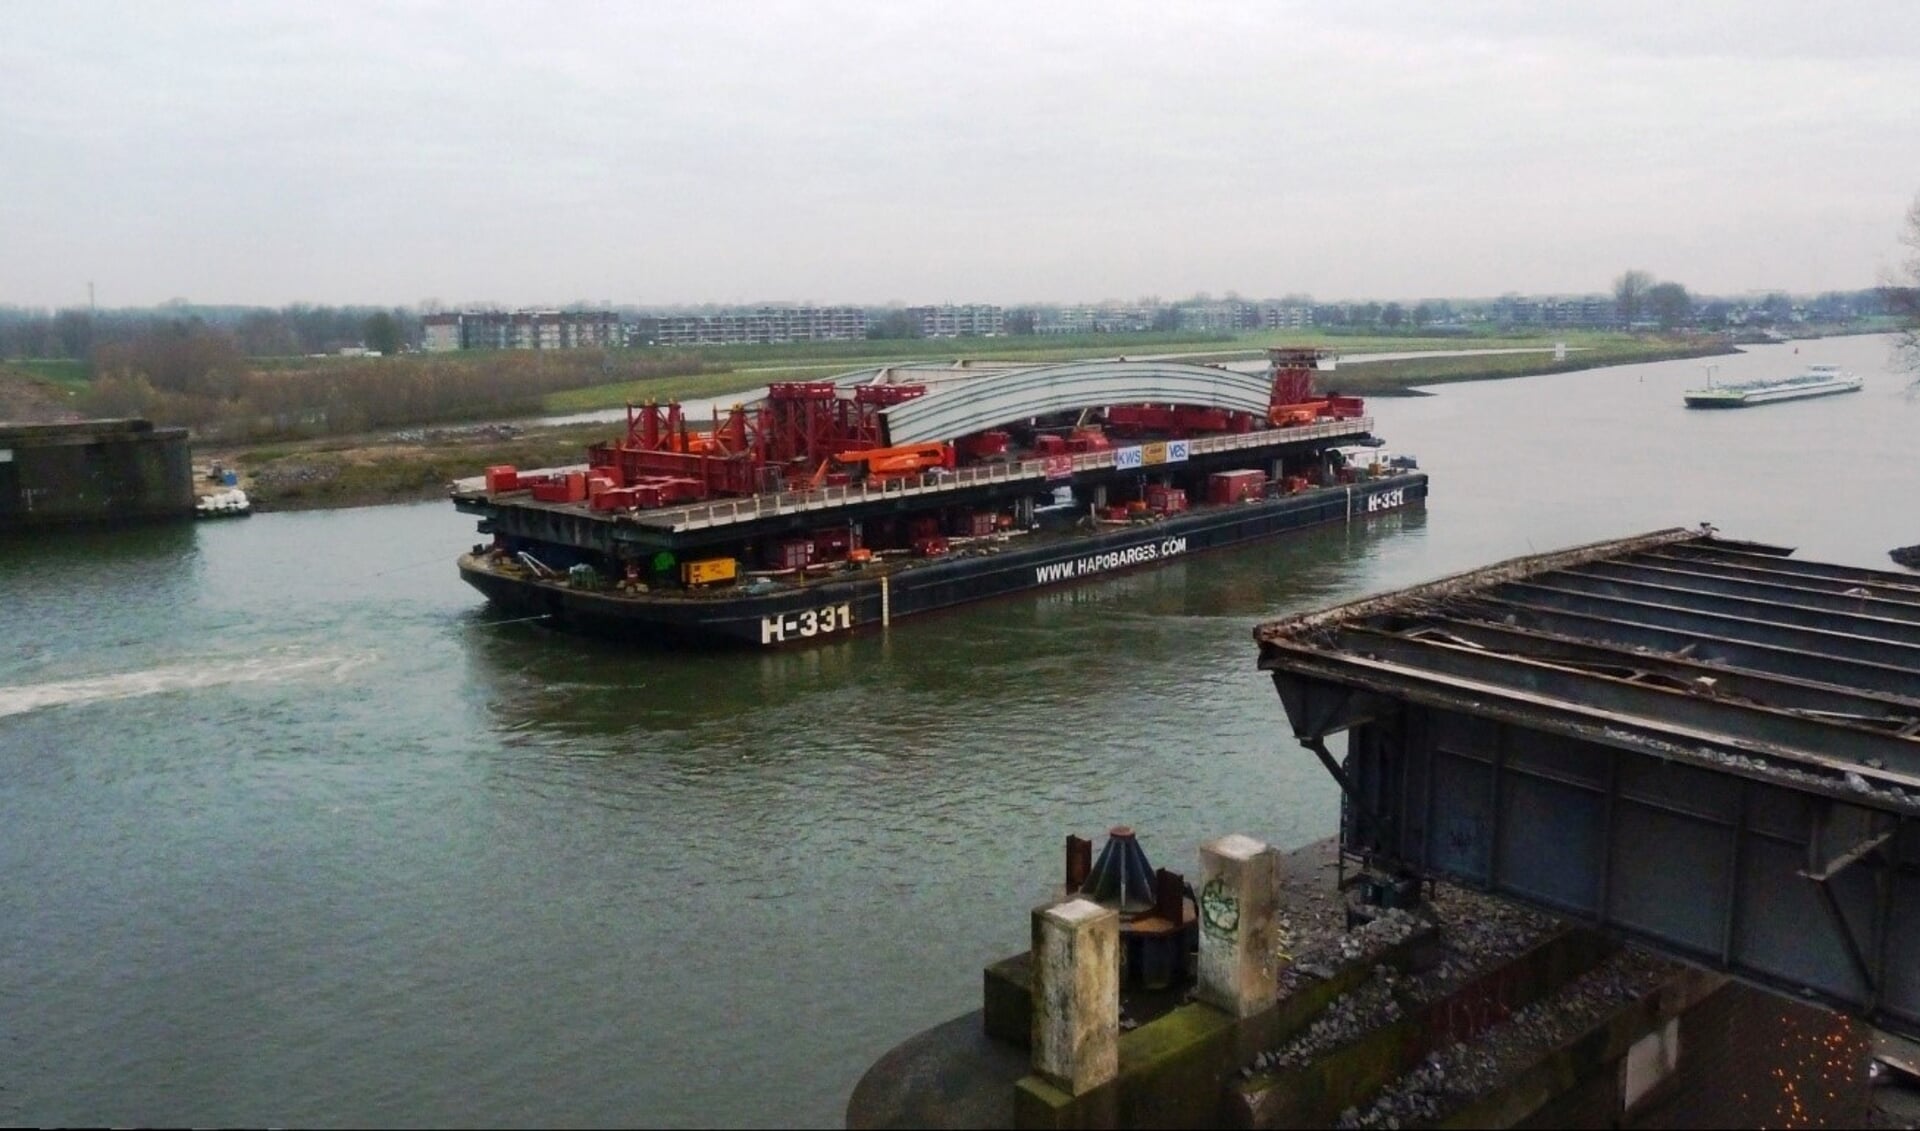 Op 13 december 2021 voer het restant van de boogbrug naar de werf van Mammoet in Schiedam.